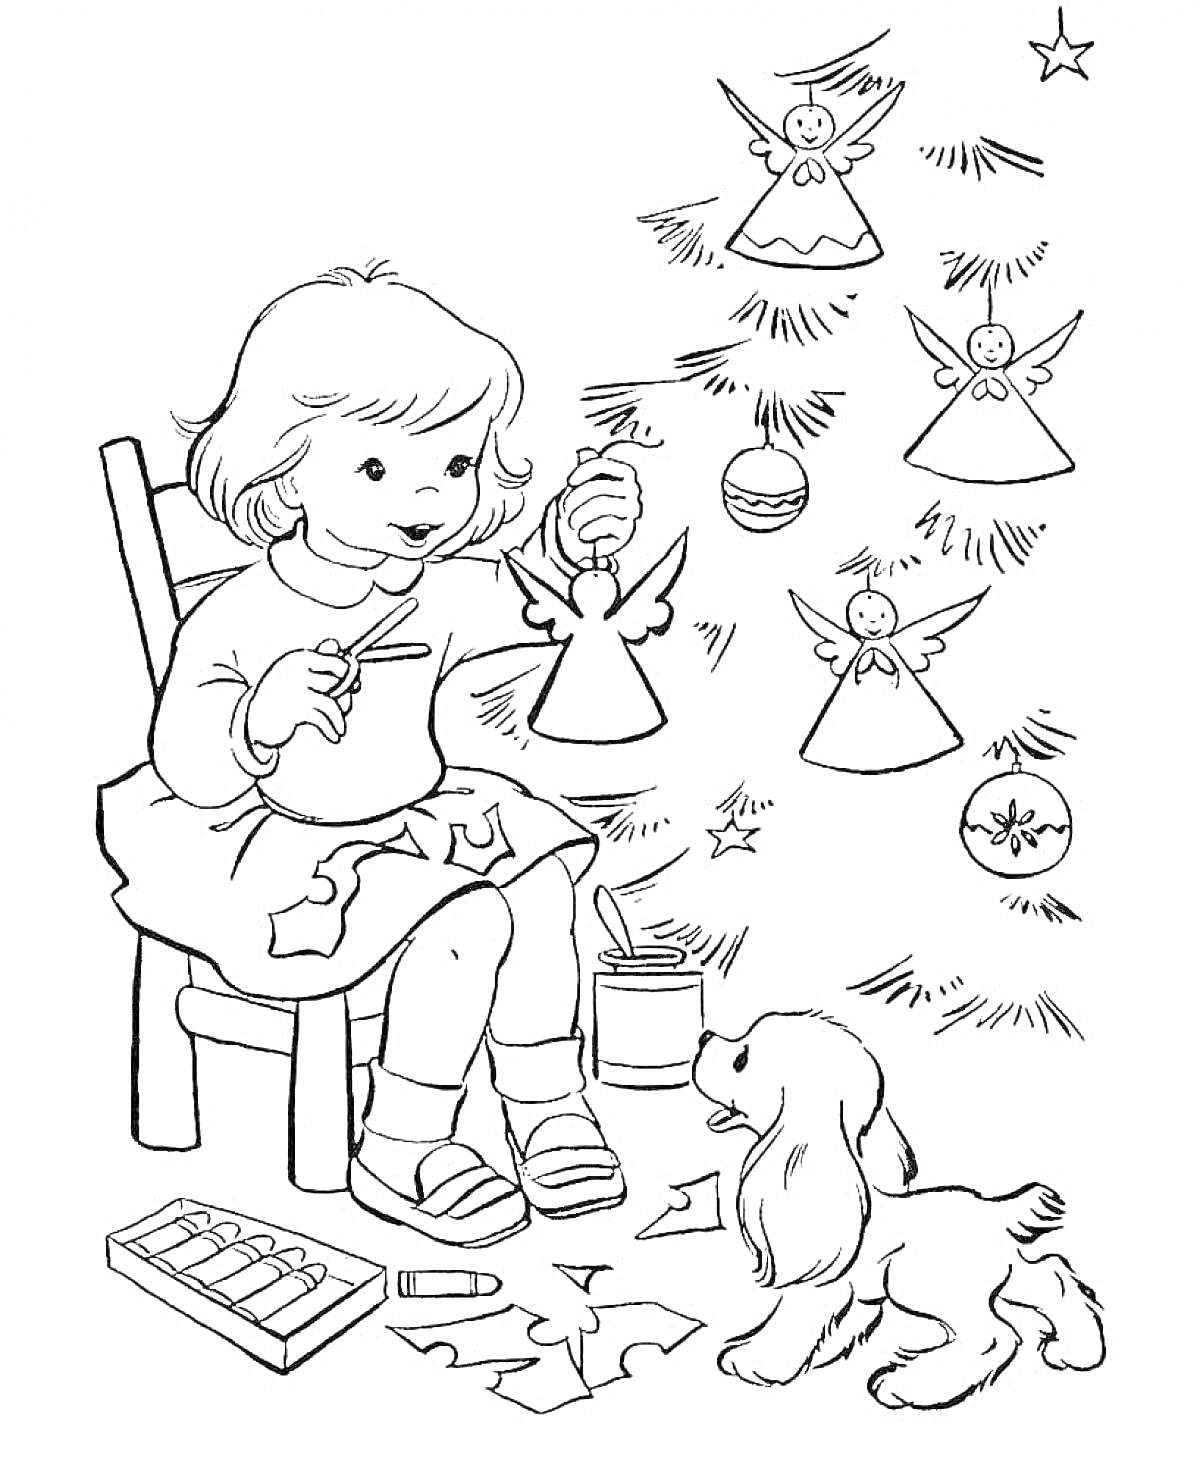 Раскраска Девочка вырезает ангелов для рождественской ёлки, рядом сидит щенок и на полу разложены бумага и элементы декора